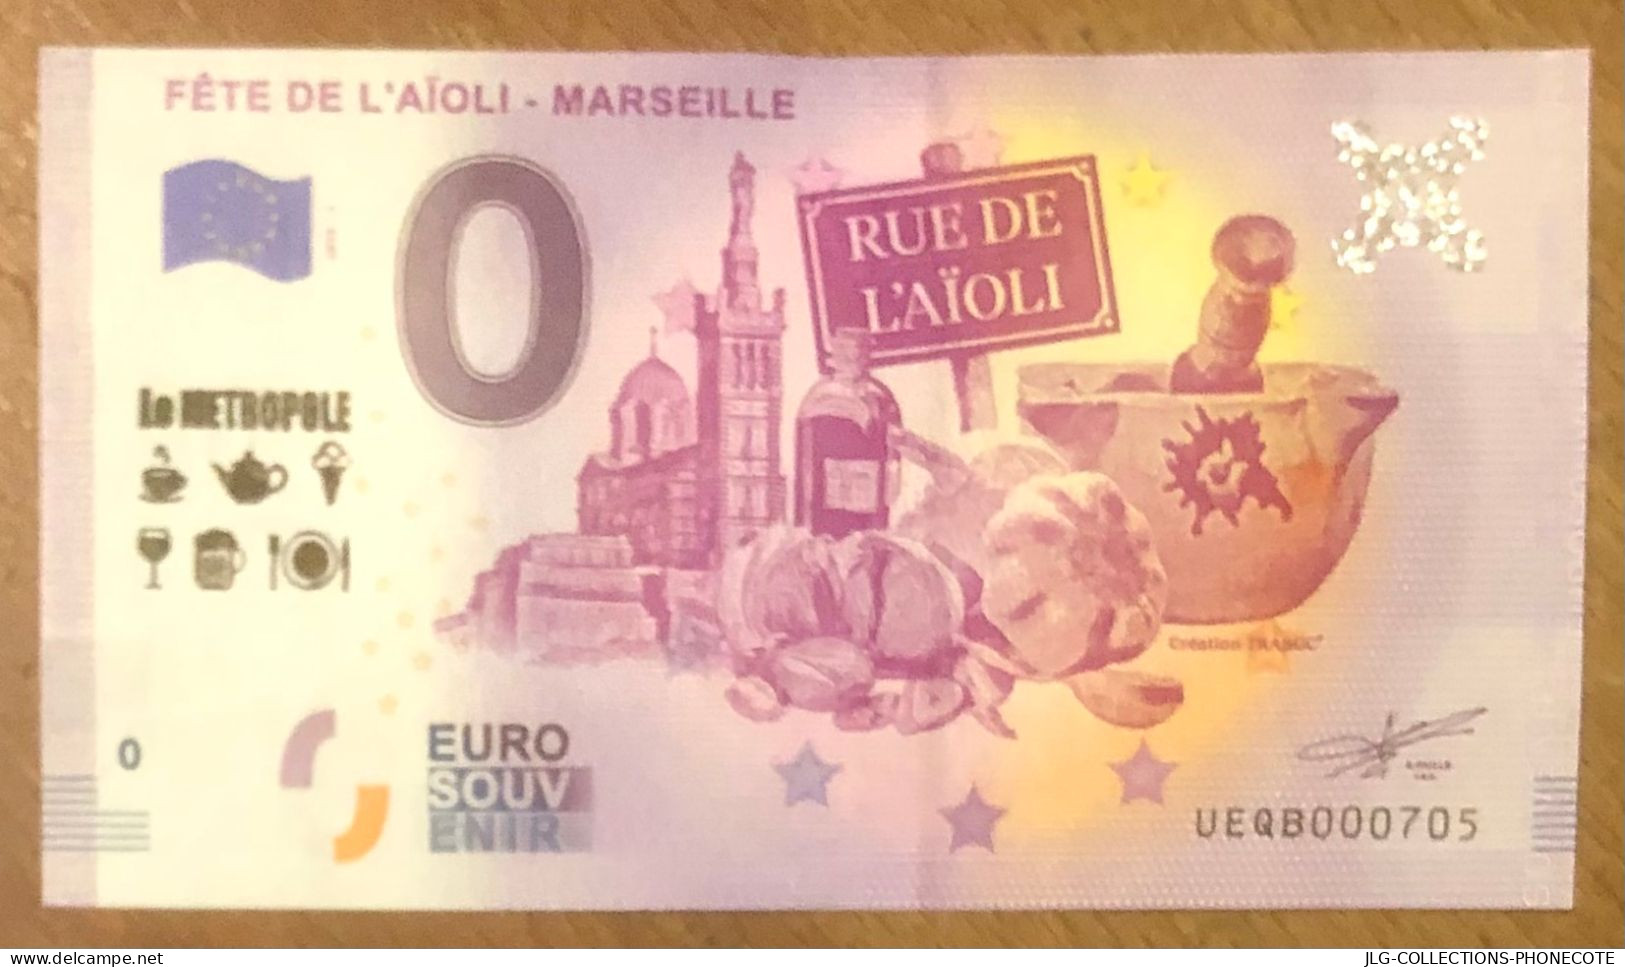 2019 MARSEILLE FÊTE DE L'AÏOLI & TAMPON LE MÉTROPOLE BILLET 0 EURO SOUVENIR 0 EURO SCHEIN BANKNOTE PAPER MONEY BILLETE - Essais Privés / Non-officiels